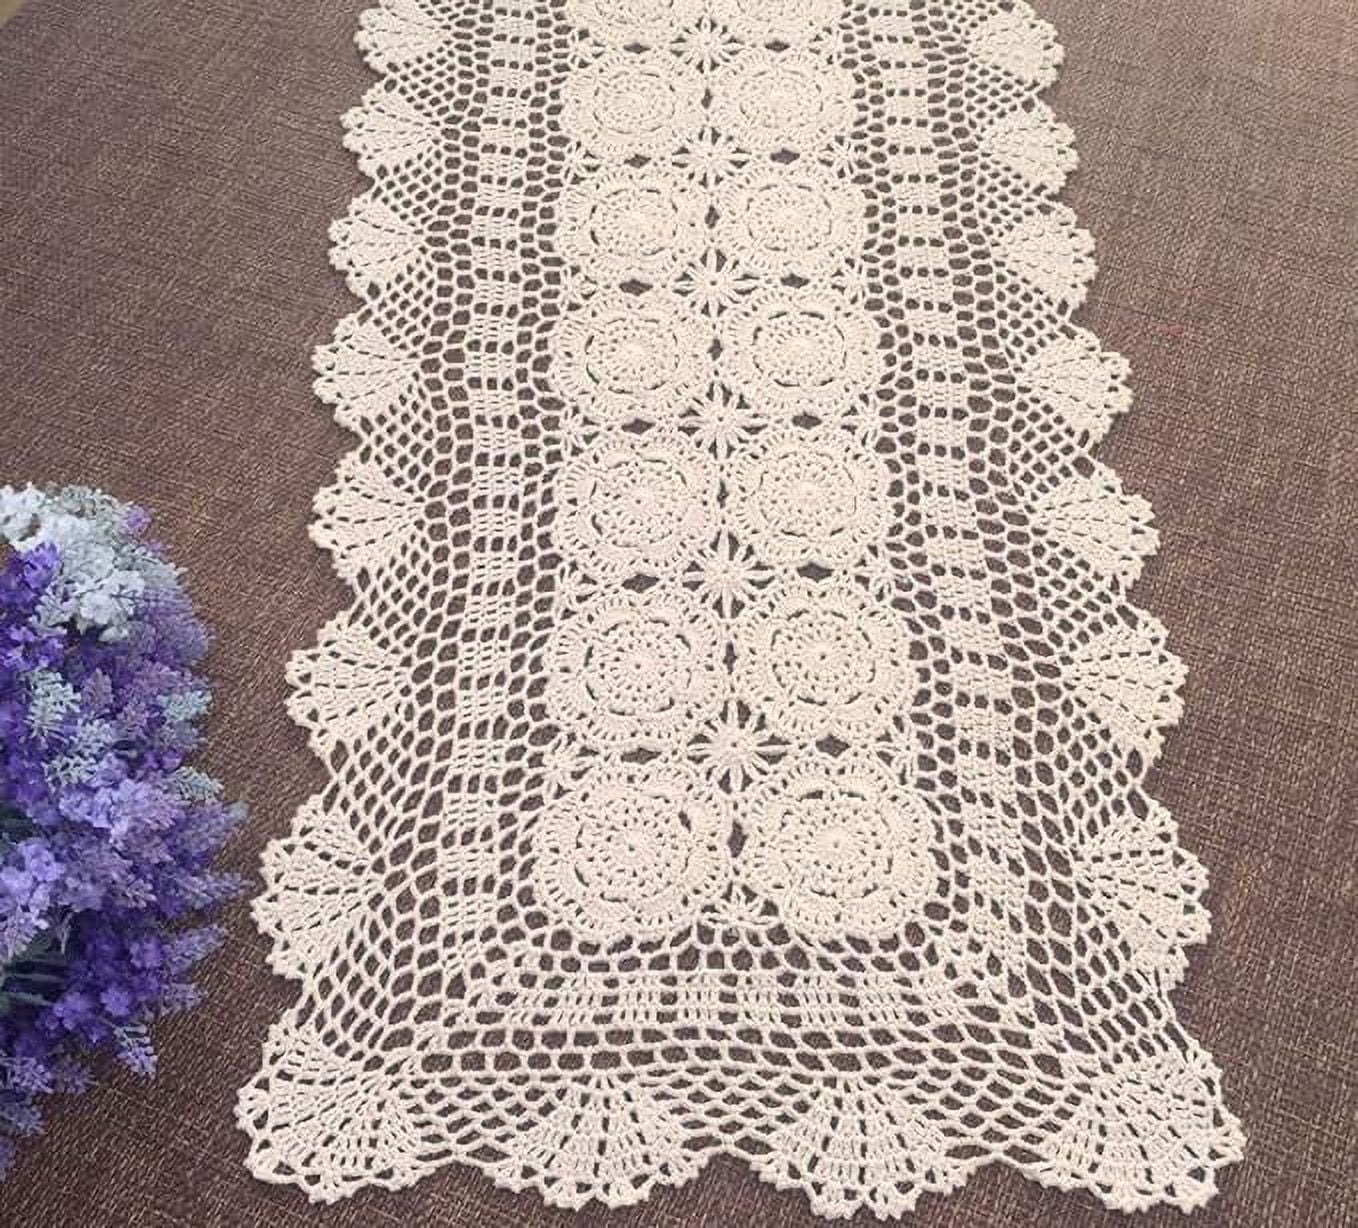 Damanni Rectangular Cotton Handmade Crochet Lace Table Runner Doilies ...